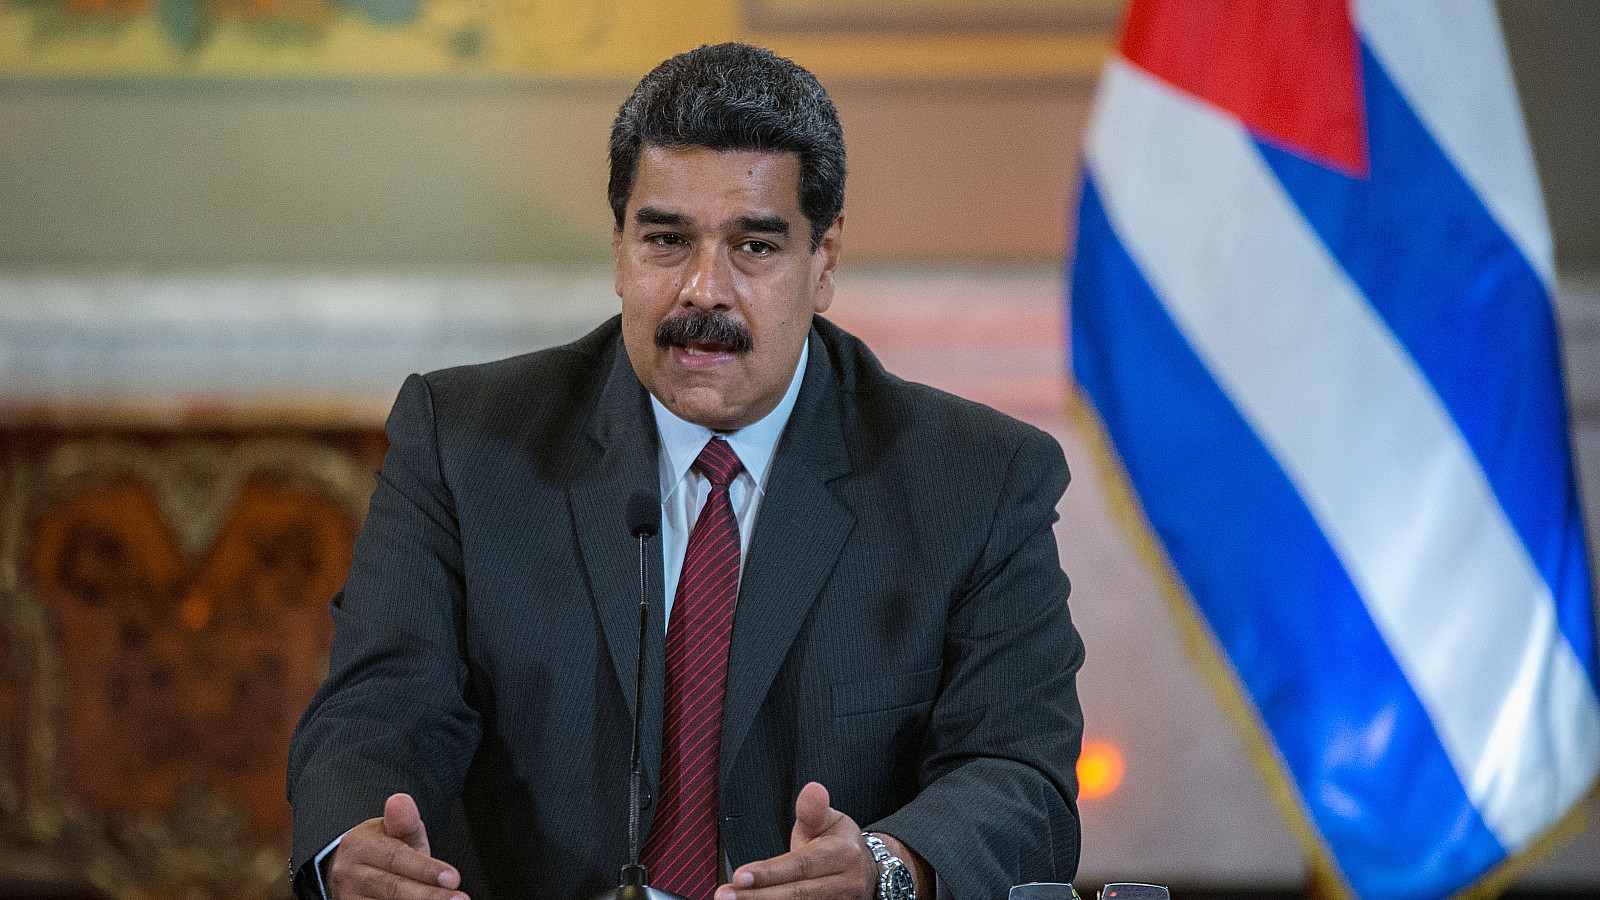 Nicolás Maduro, dictador de Venezuela detrás la bandera de Cuba | Shutterstock